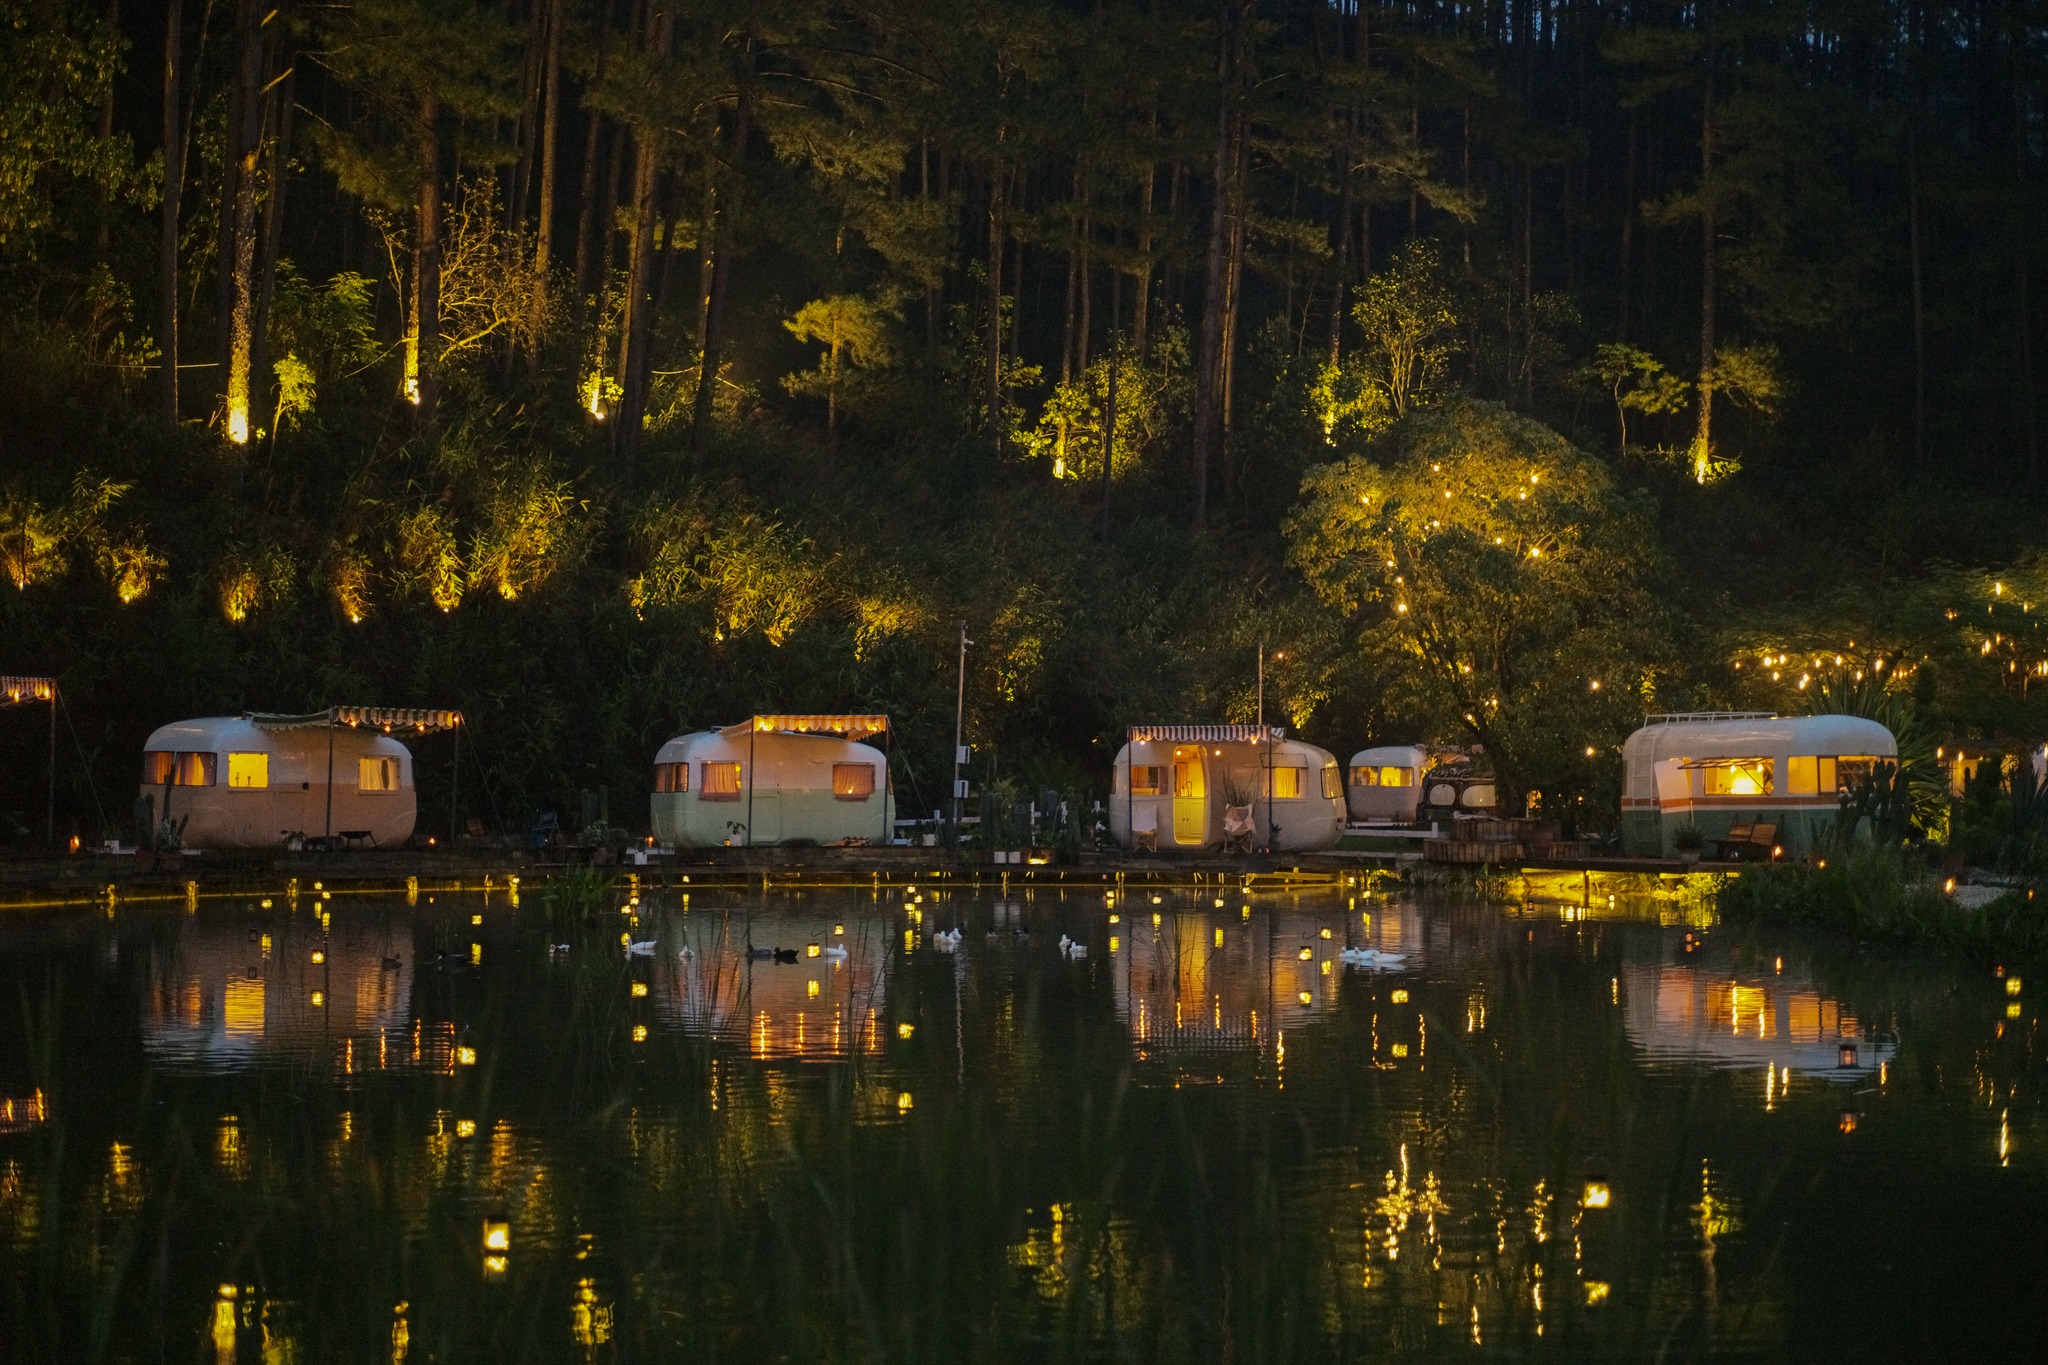 the camp inn đà lạt – trải nghiệm kiểu cắm trại mobihome camping